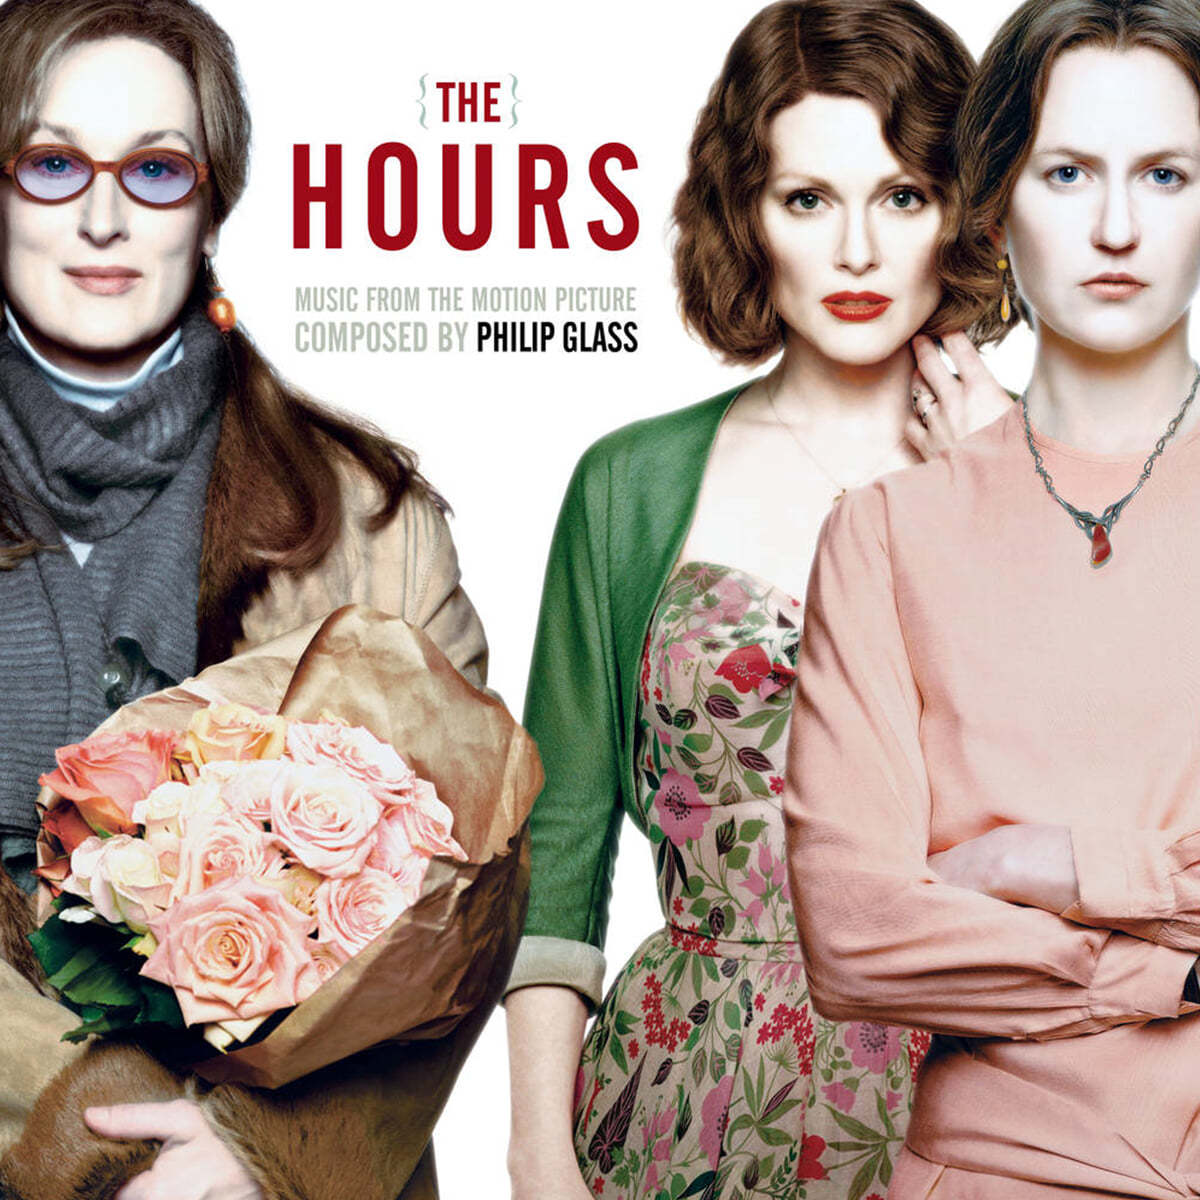 디 아워스 영화음악 (The Hours OST by Philip Glass) [2LP]